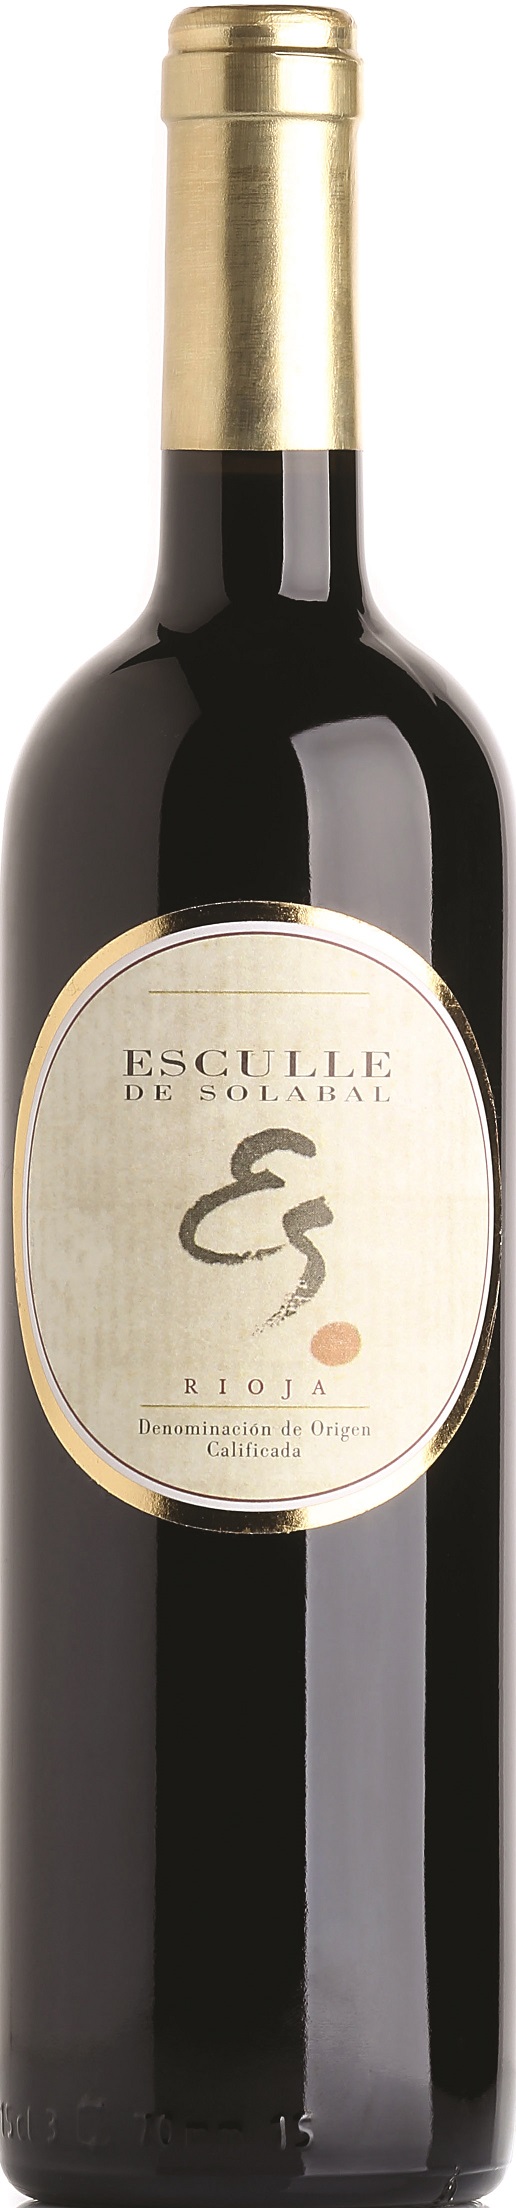 Logo Wine Esculle de Solabal